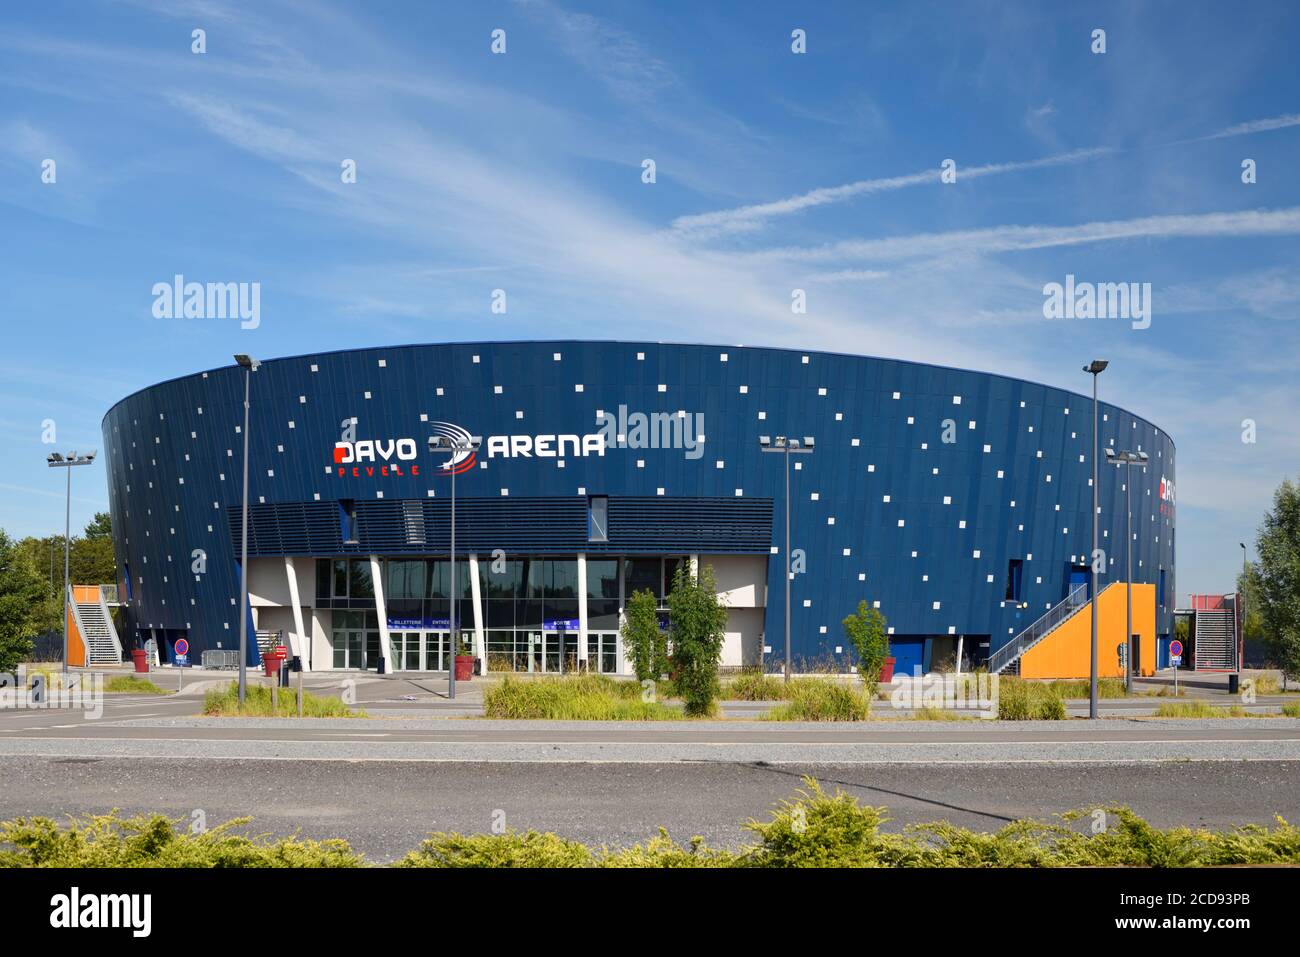 France, Nord, Orchies, Davo Pevele Arena, der größte Multisportkomplex nördlich von Paris mit 5000 Sitzplätzen und ist vor allem dem Basketball gewidmet Stockfoto